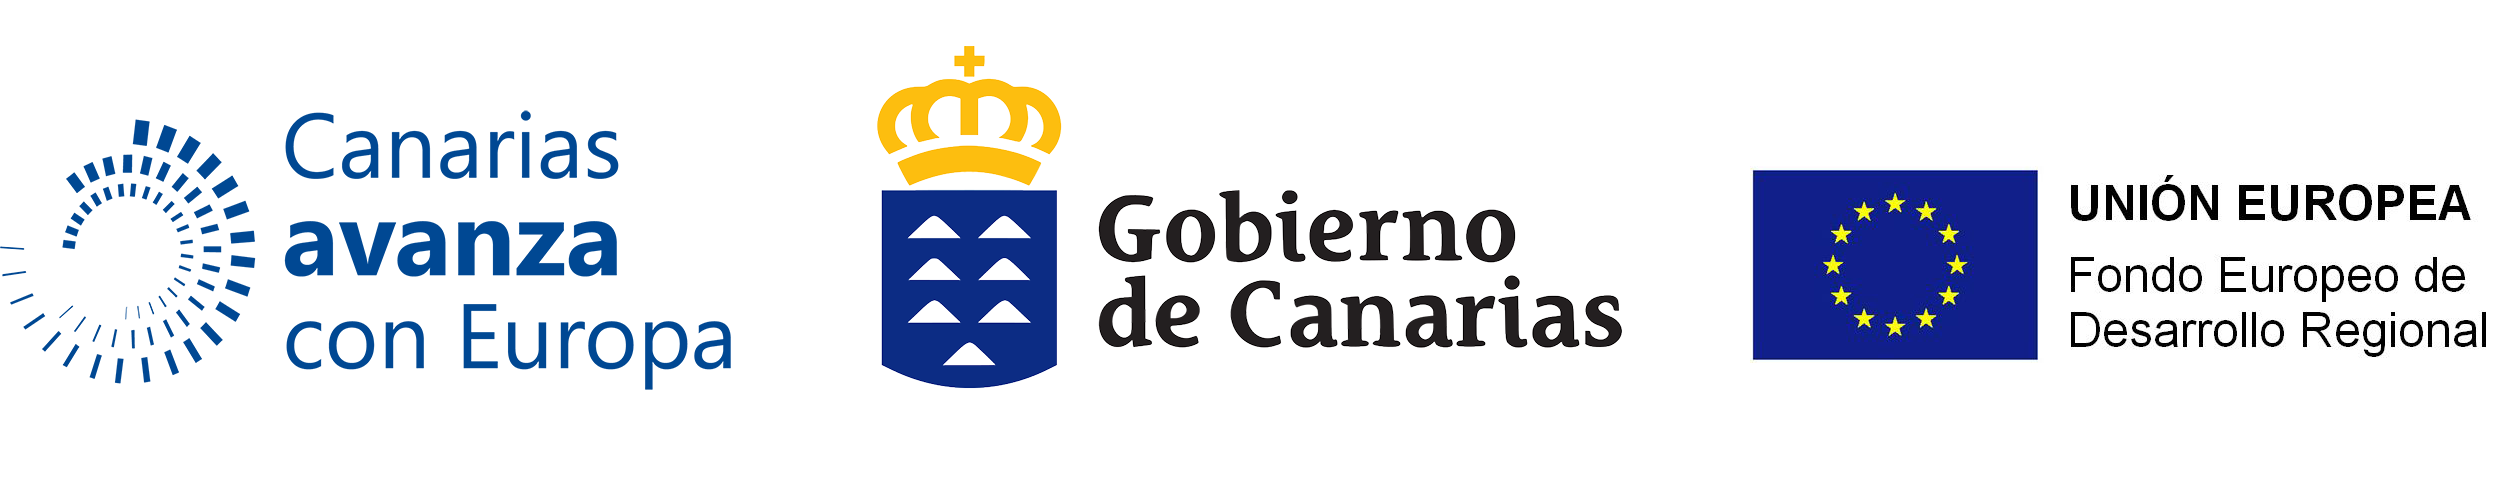 Logos gobierno de Canarias / Fondo Social Europeo